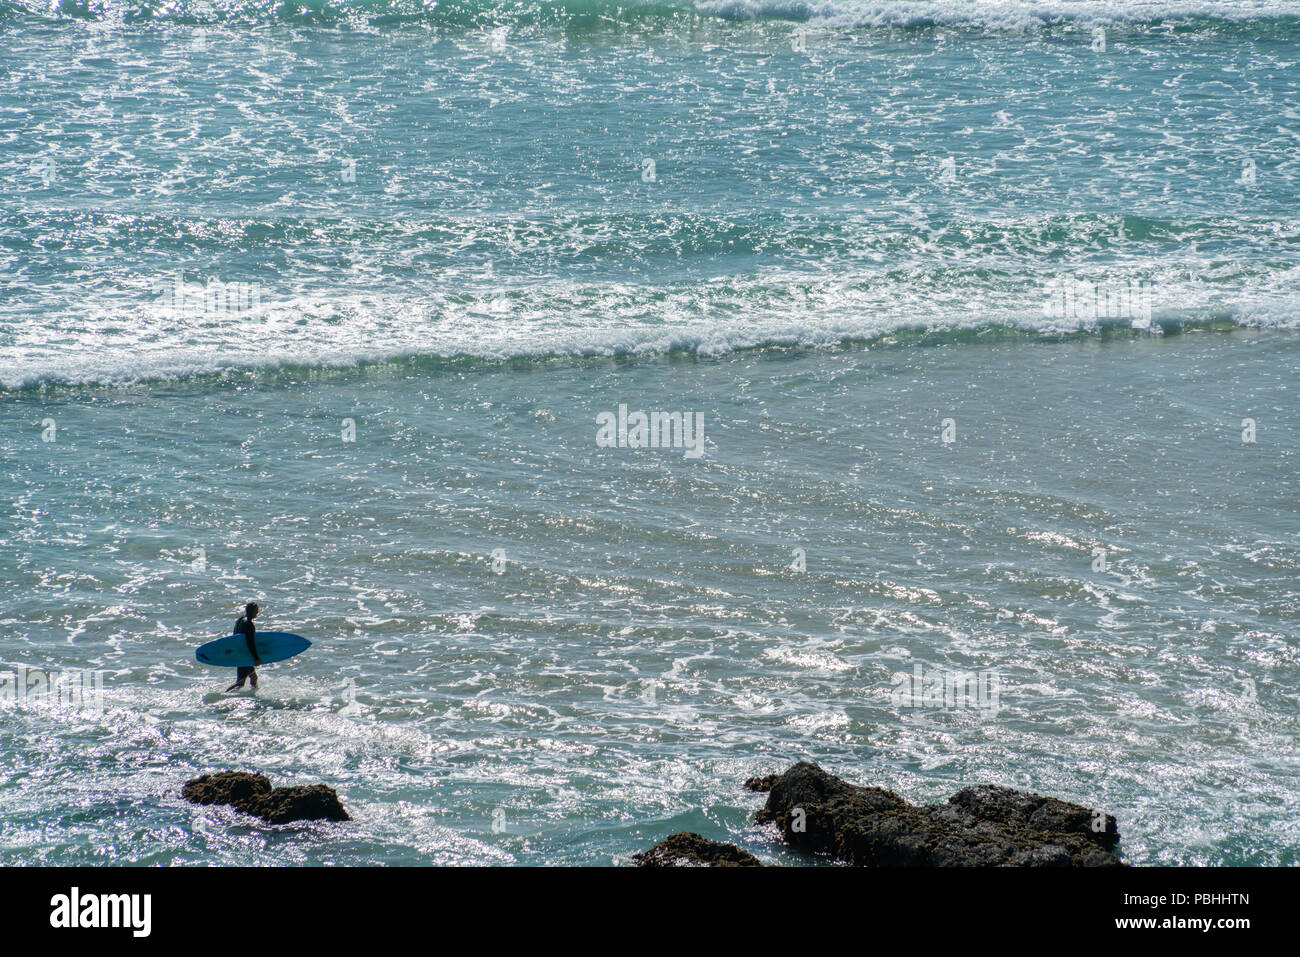 Background ampia spiaggia per il surf con surfer walikng scheda di trasporto attraverso i fondali. Foto Stock